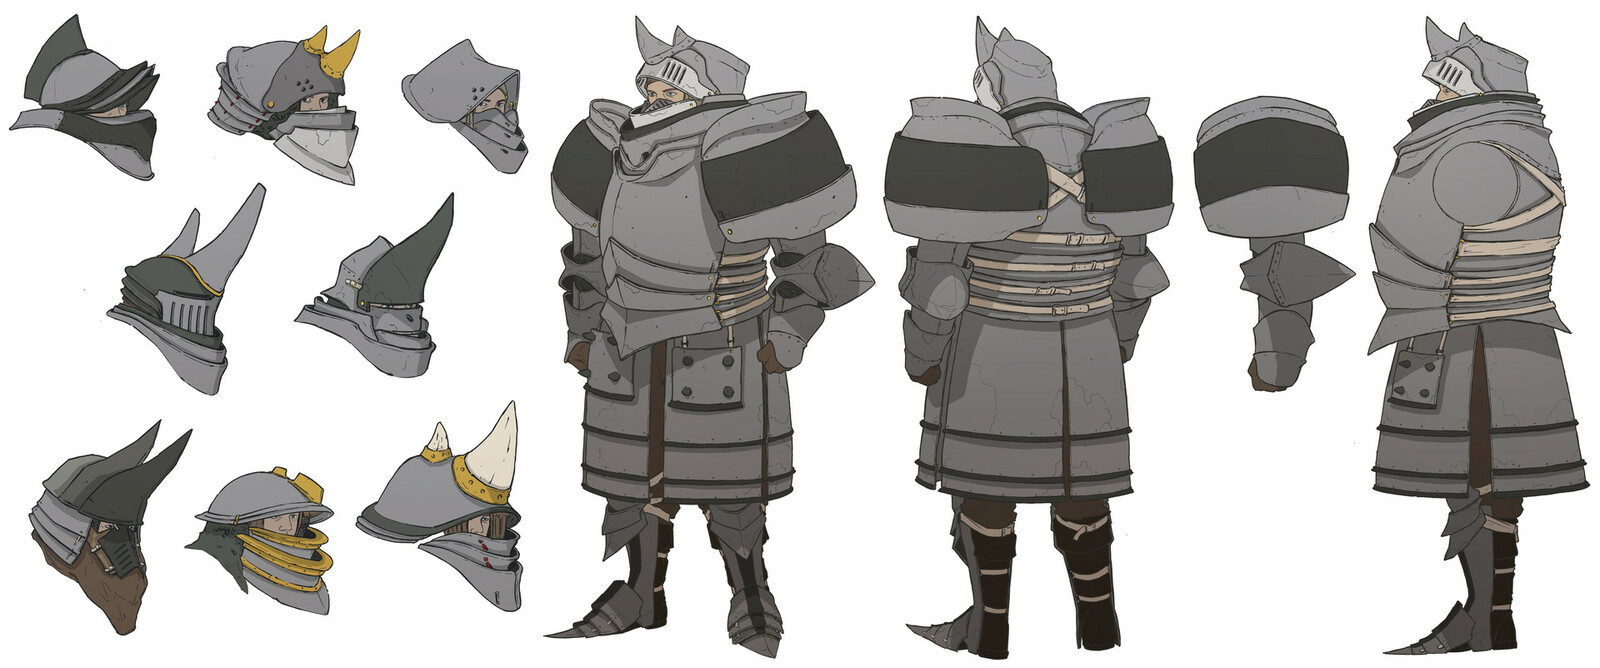 Rhino inspired Knight